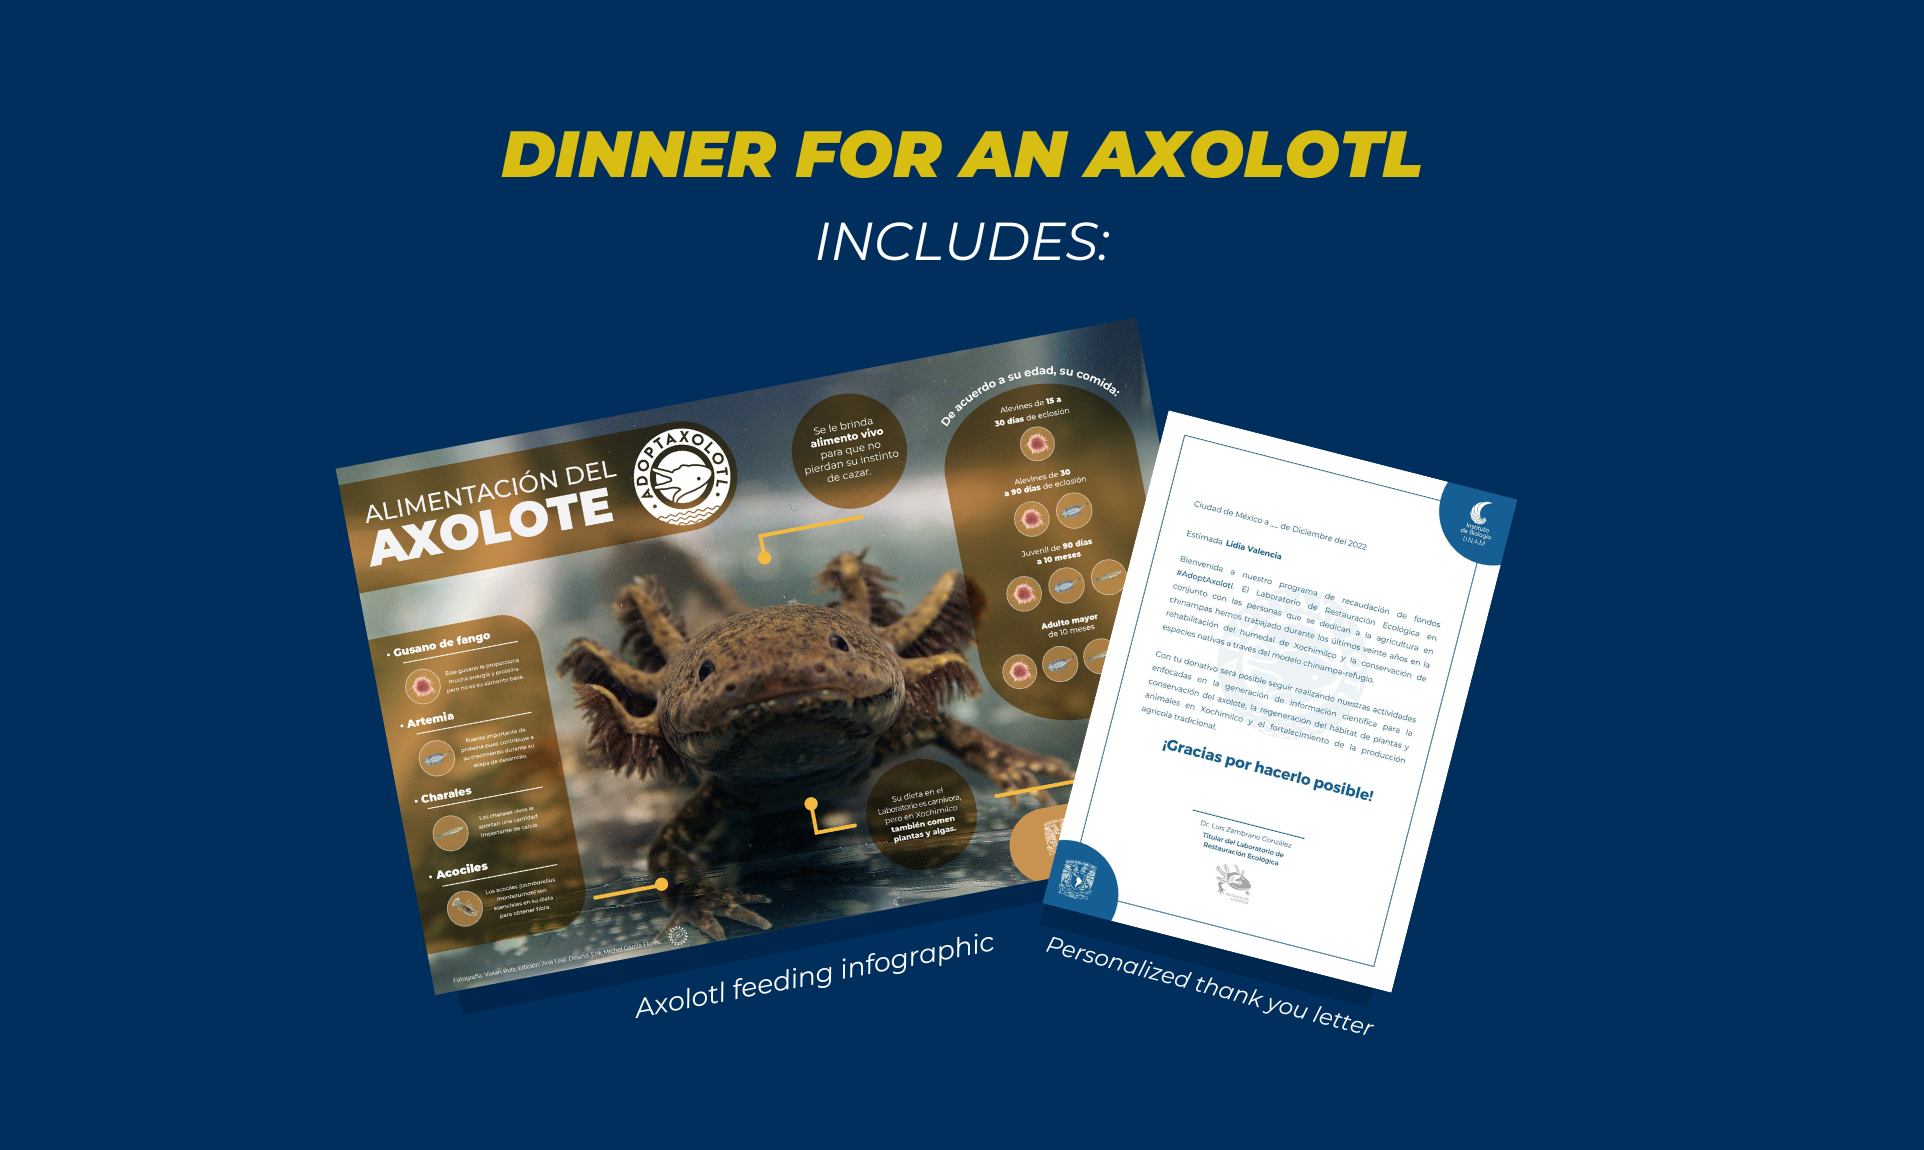 Adoptaxolotl - Axolotl adoption: Dinner for an axolotl